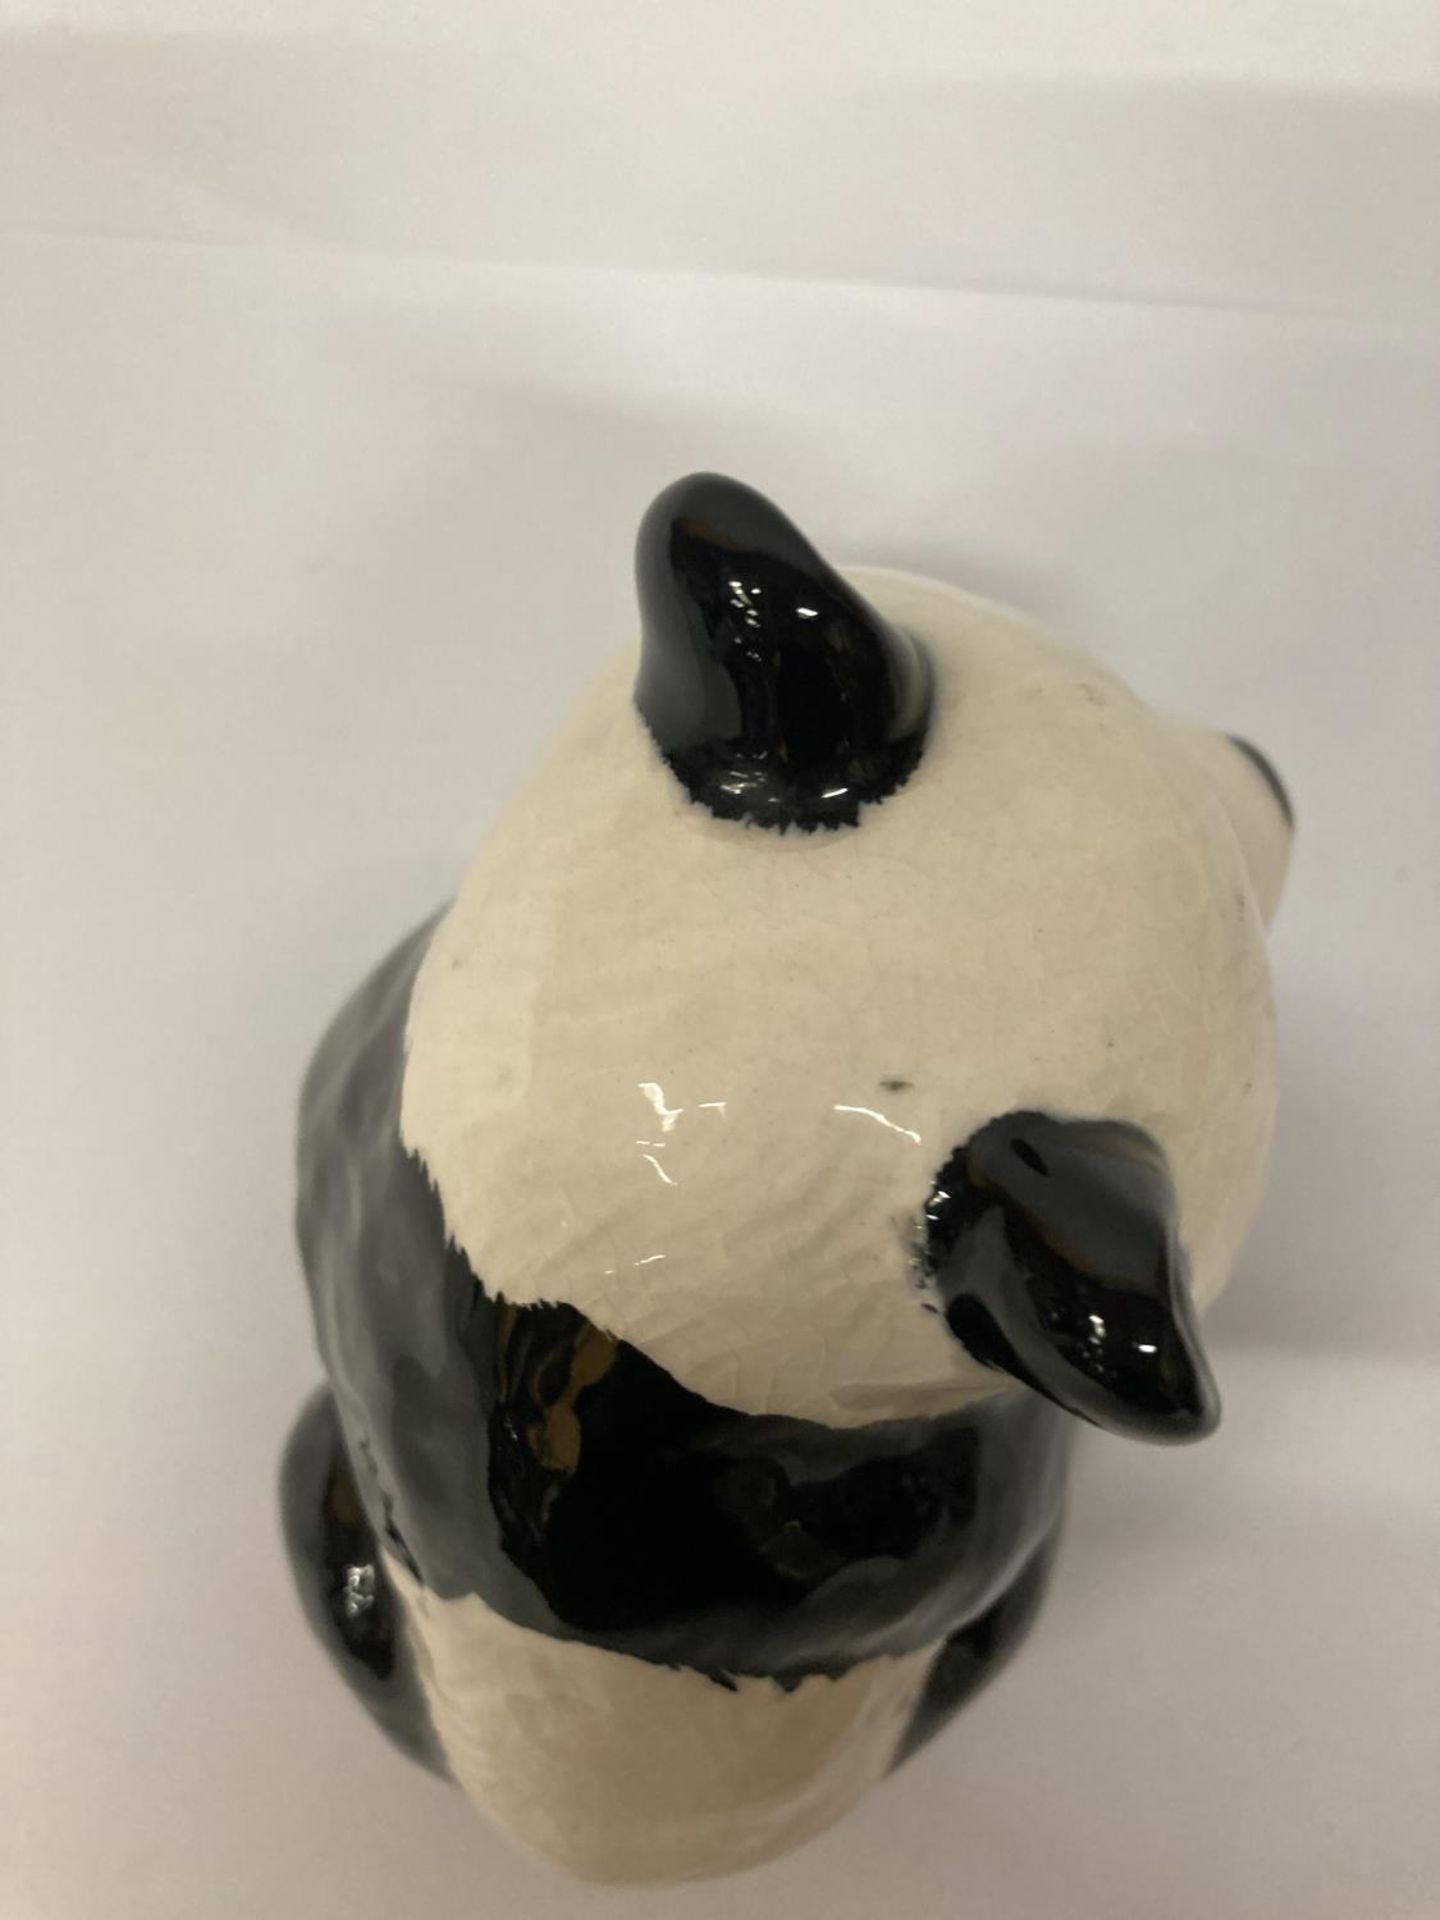 A BESWICK PANDA WITH A BALL - Image 5 of 6